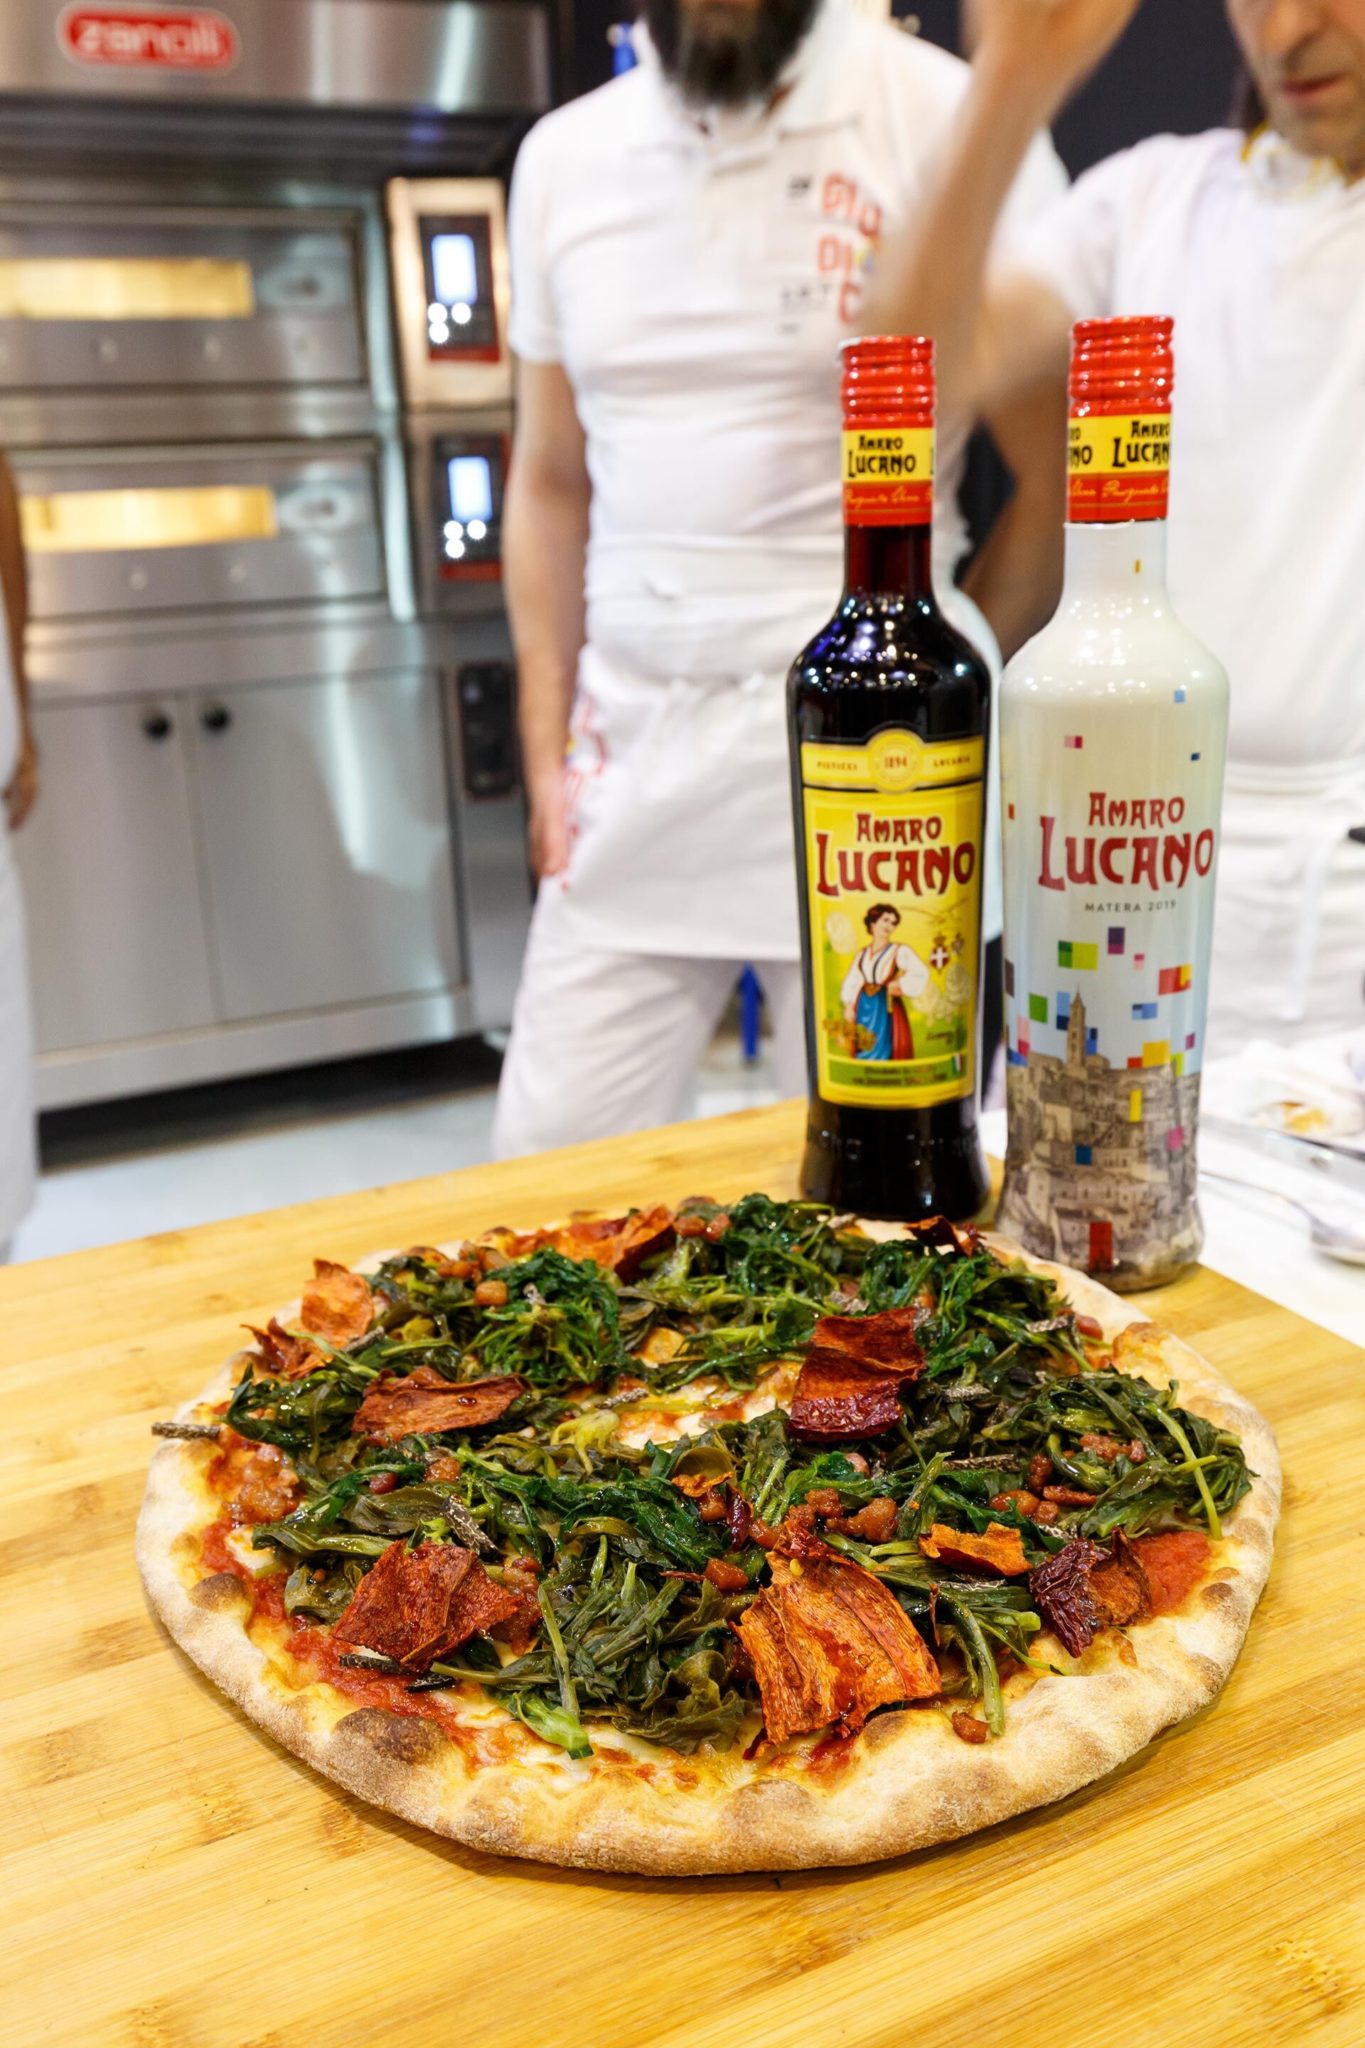 Amaro Lucano originale ingrediente della ricetta della Pizza dedicata alla città di Matera Capitale europea della Cultura 2019 - Sapori News 